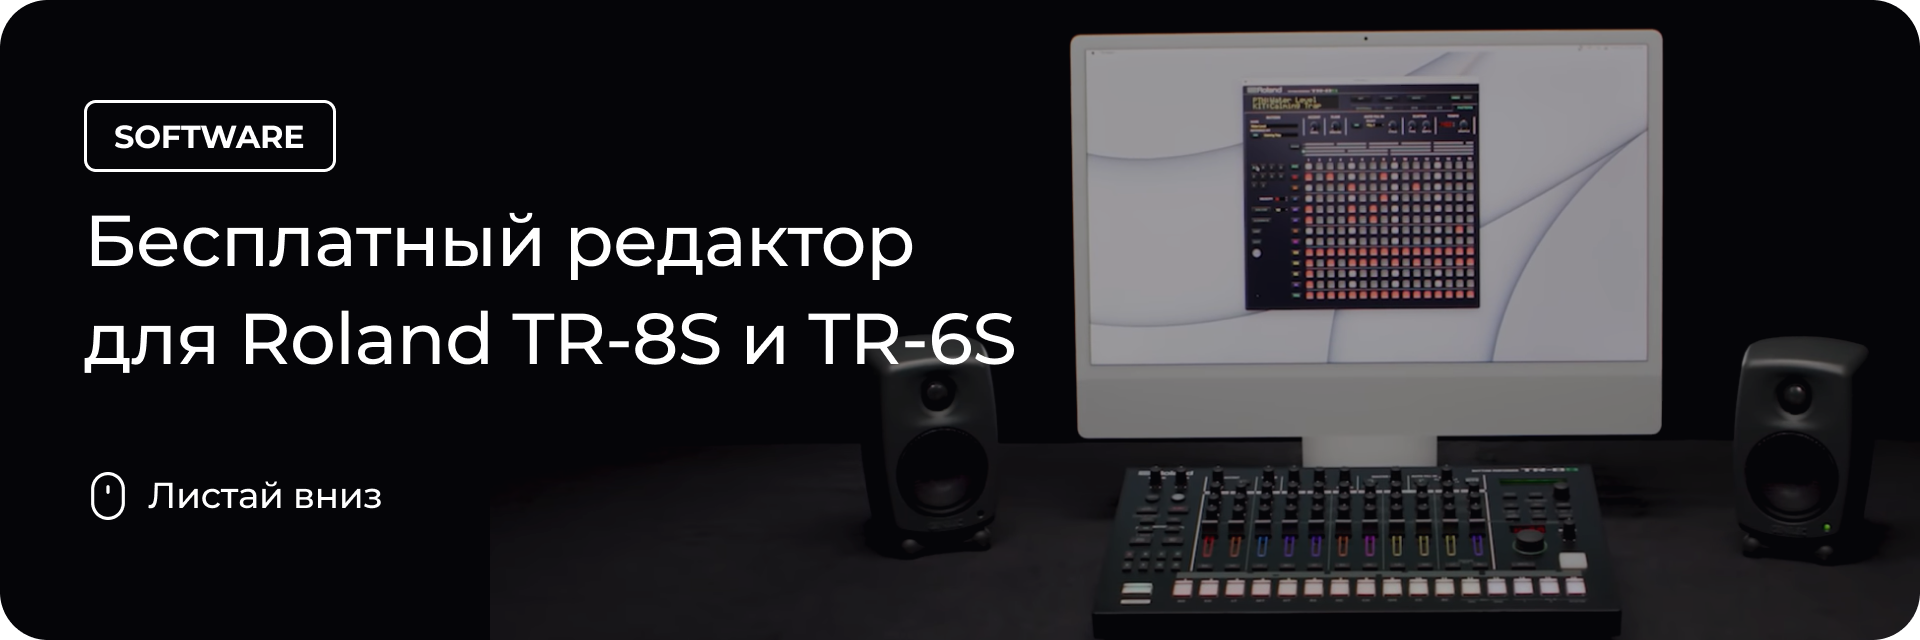 Бесплатный редактор для Roland TR-8S и TR-6S